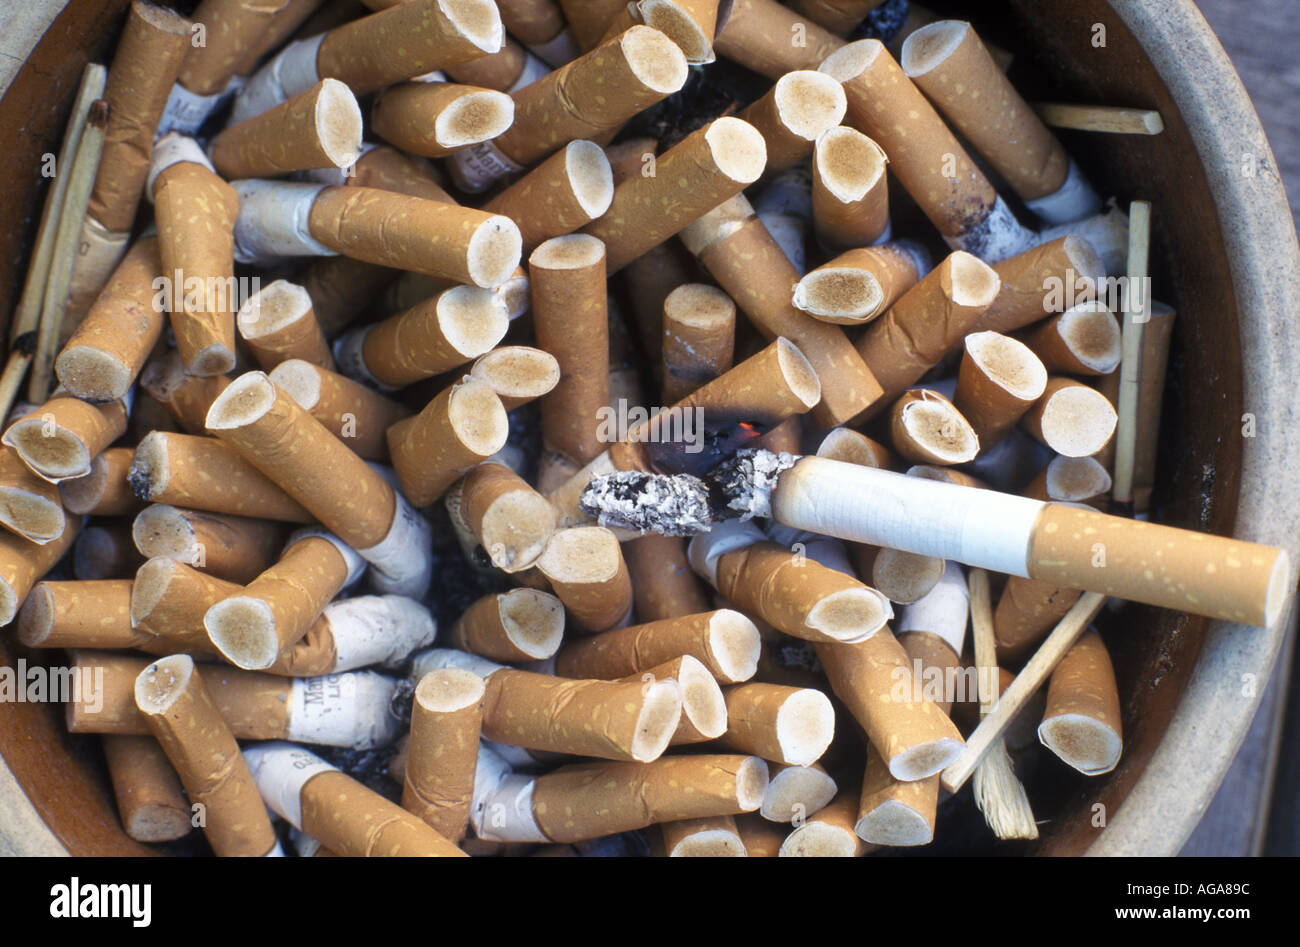 Eine Zigarette brennt auf einen Aschenbecher voller kippen. Stockfoto